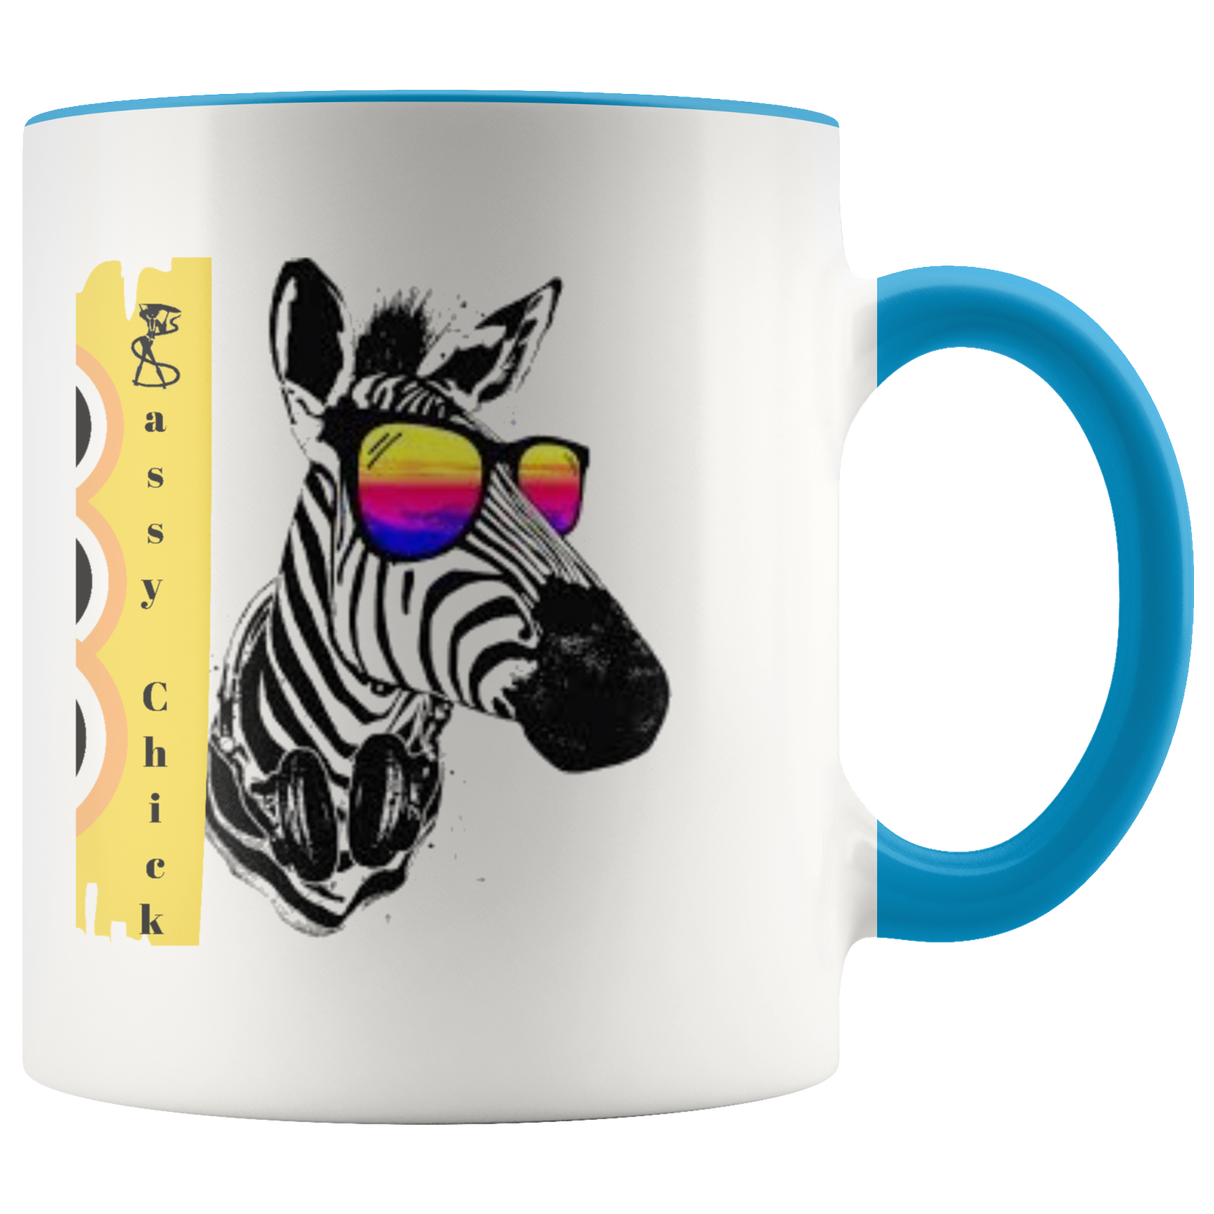 Mug Zebra Ceramic Accent Mug - Blue | Shop Sassy Chick